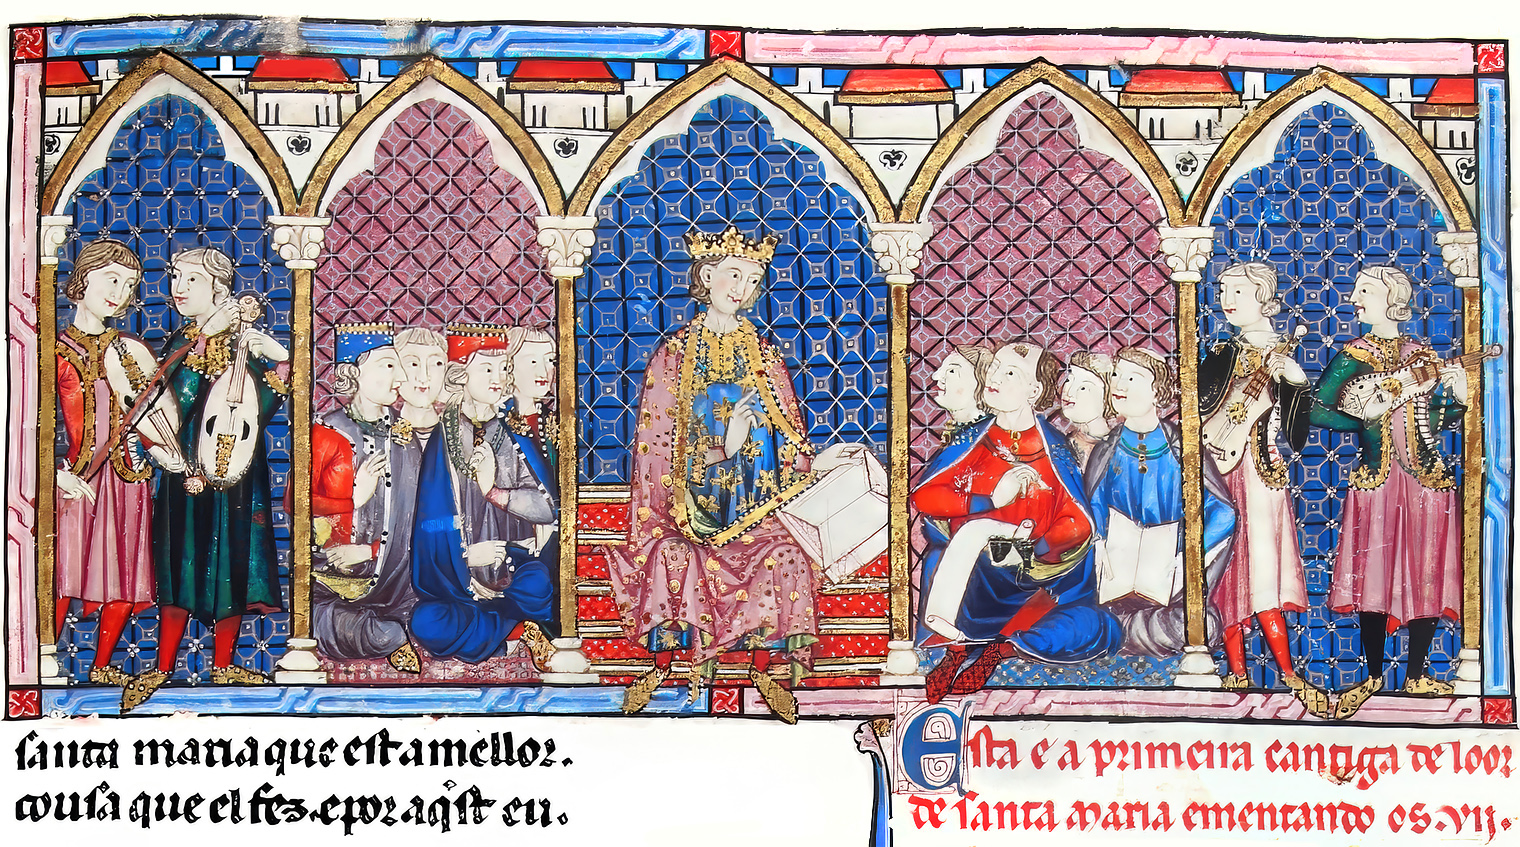 Trovadorismo | Royal court of Alfonso X, 1221-1284, depicted in Cantigas de Santa María, p. 69 | Patrimonio Nacional